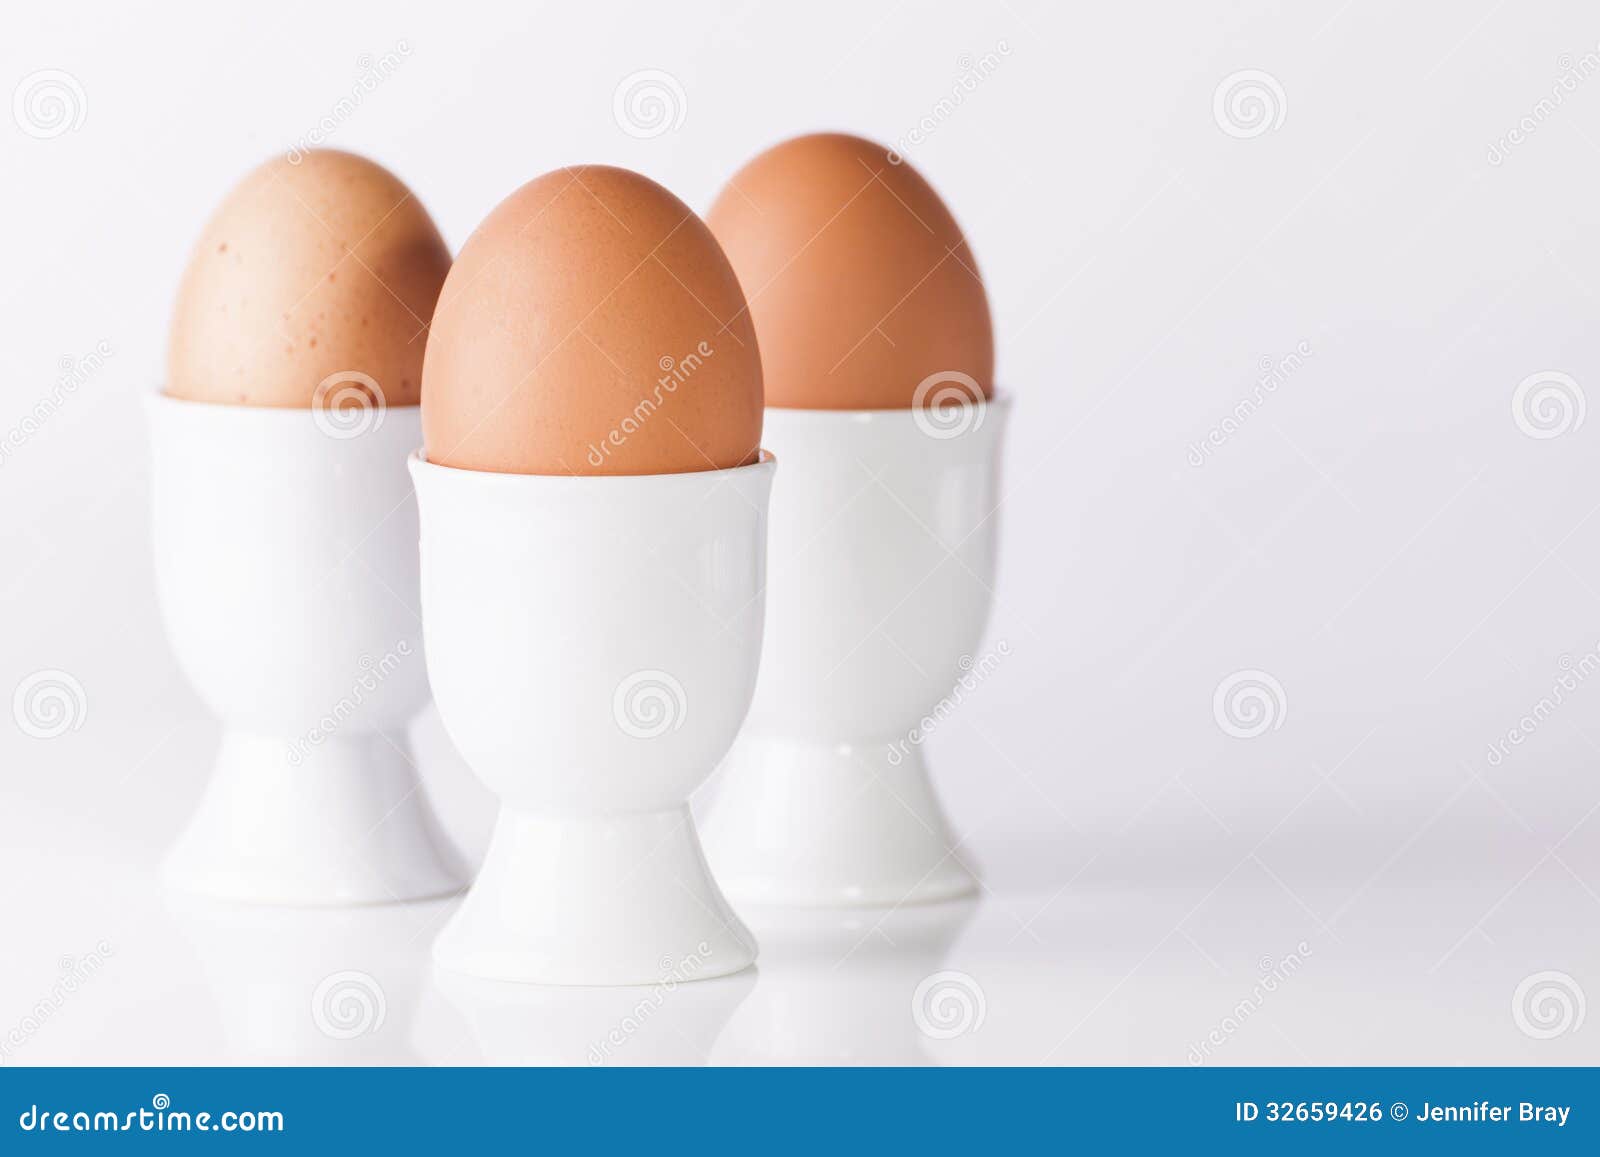 Включи 3 яйца. Три яйца. Яйца 3 шт. Яйца три штуки. 3 Вареных яйца.